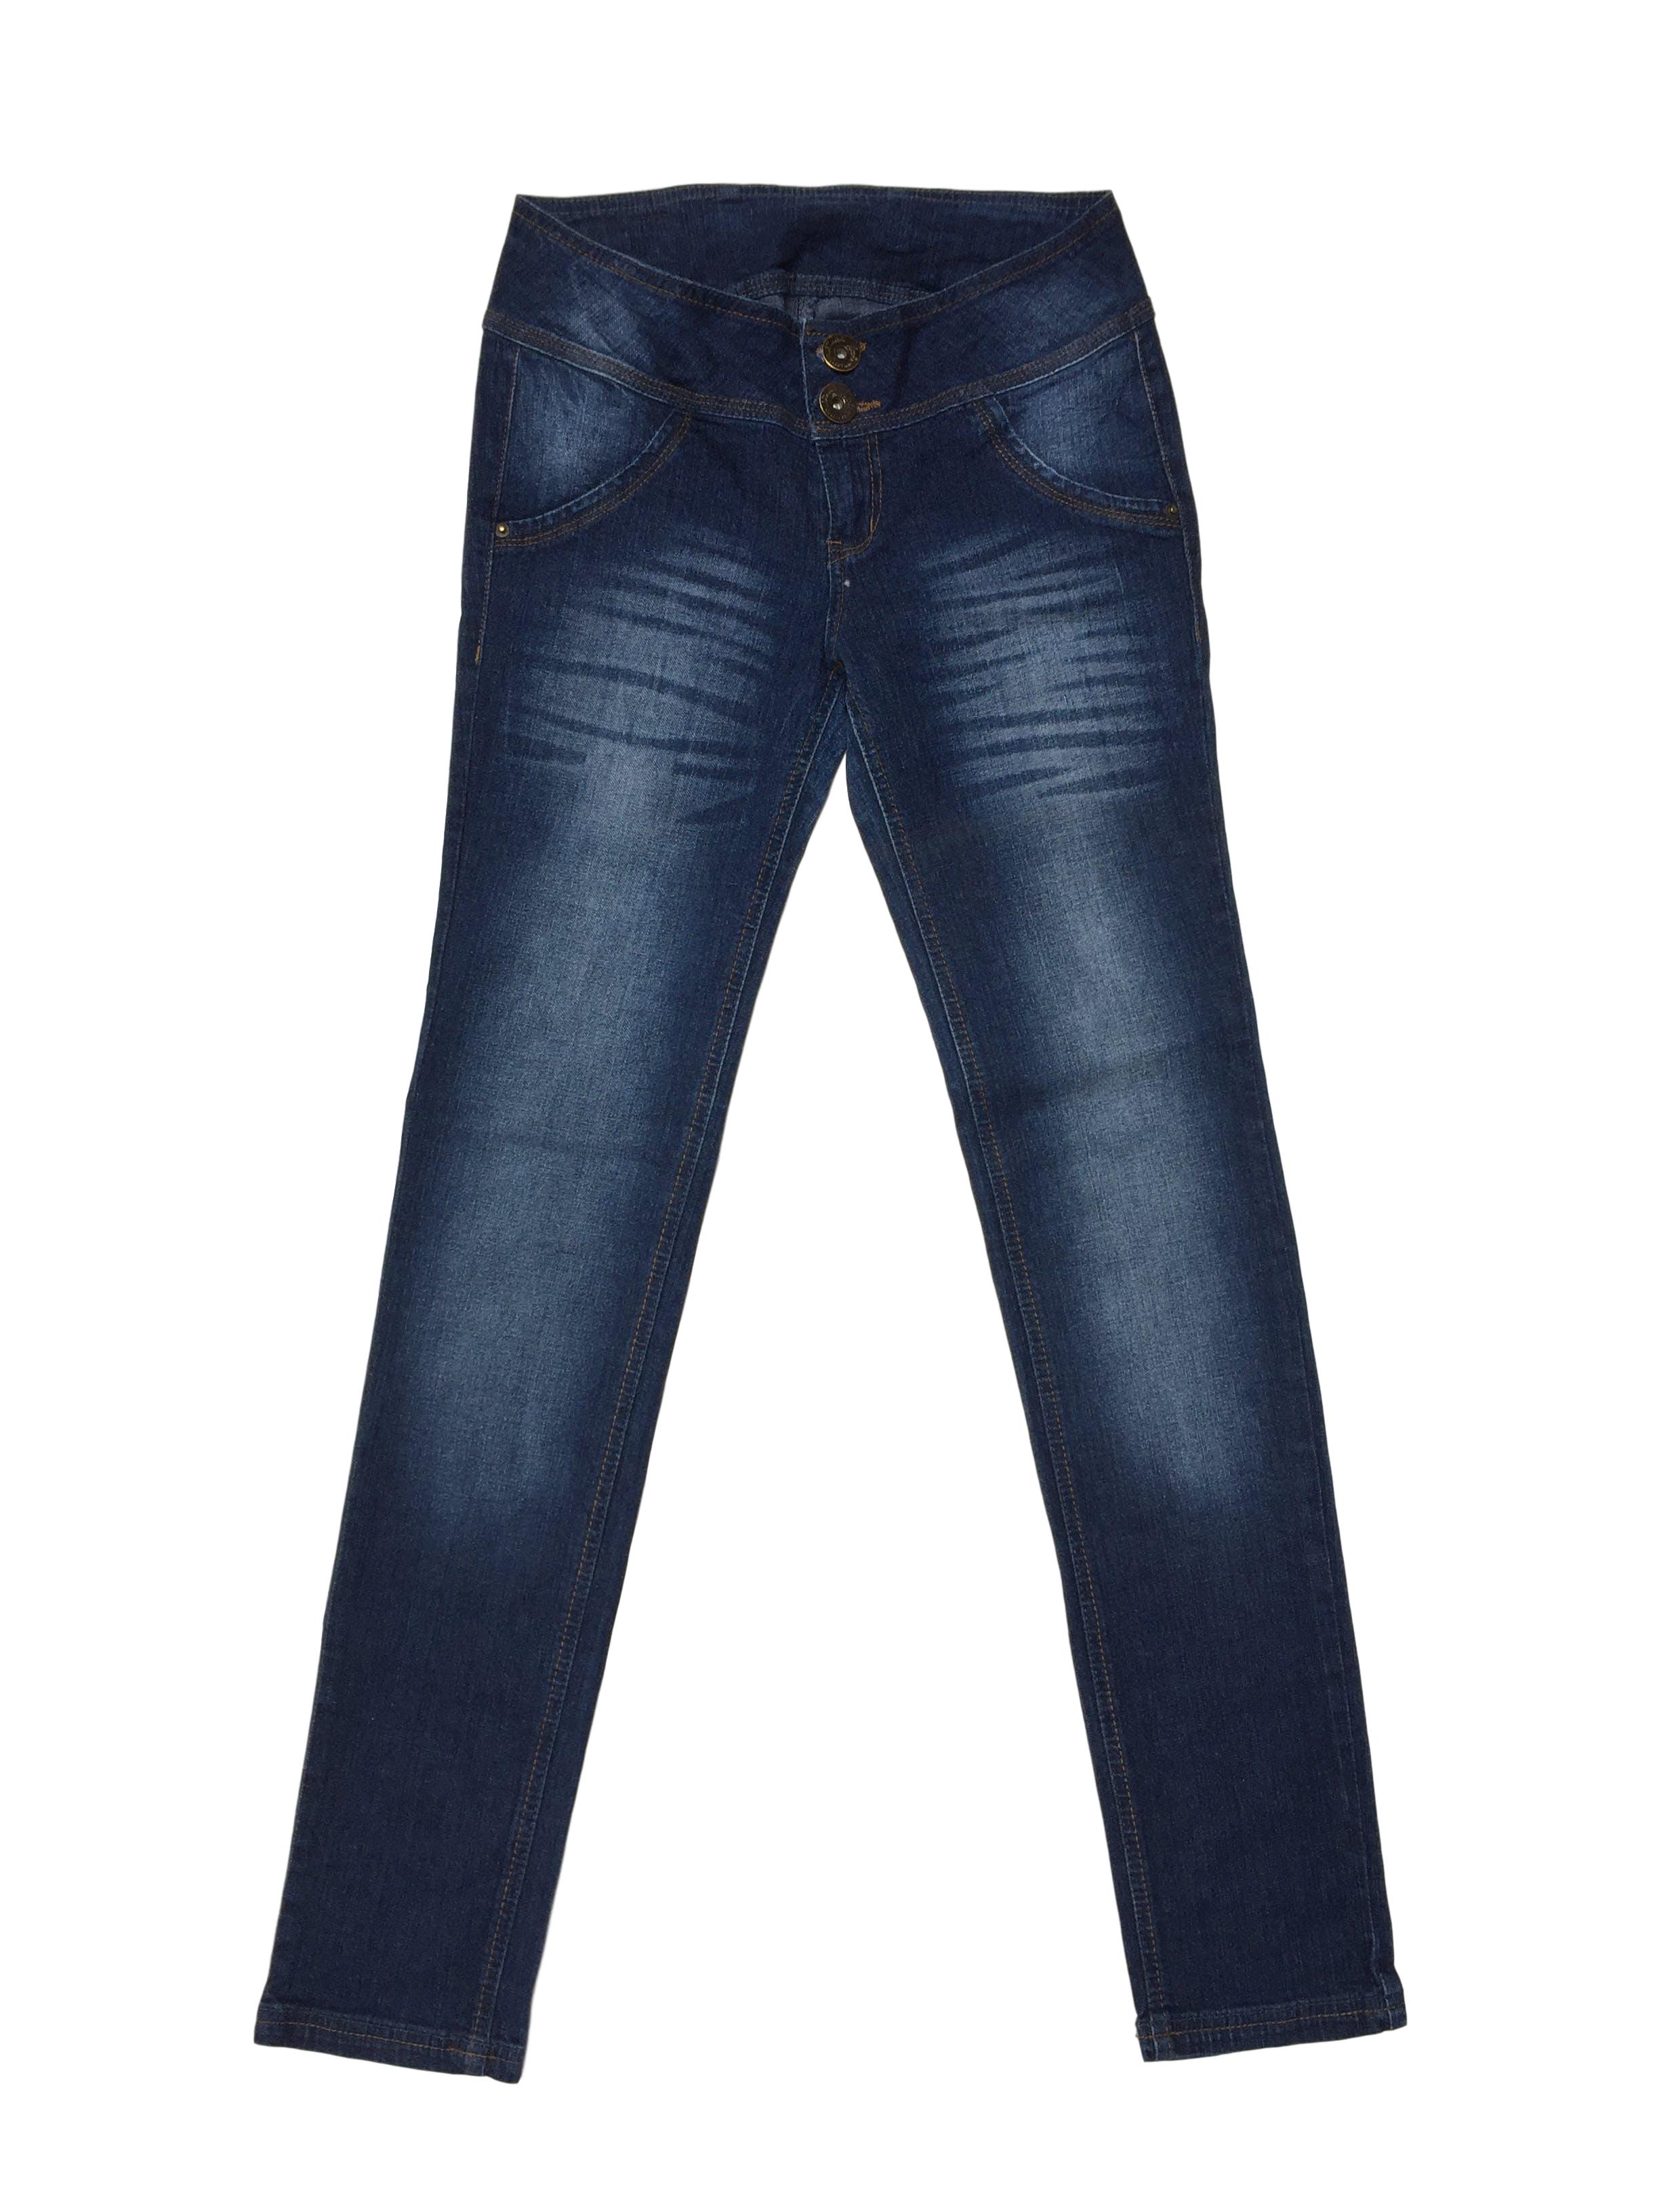 Pantalón jean azul focalizado, pespunte naranja, bolsillos falsos, pitillo, ligeramente strech
Talla S - 28